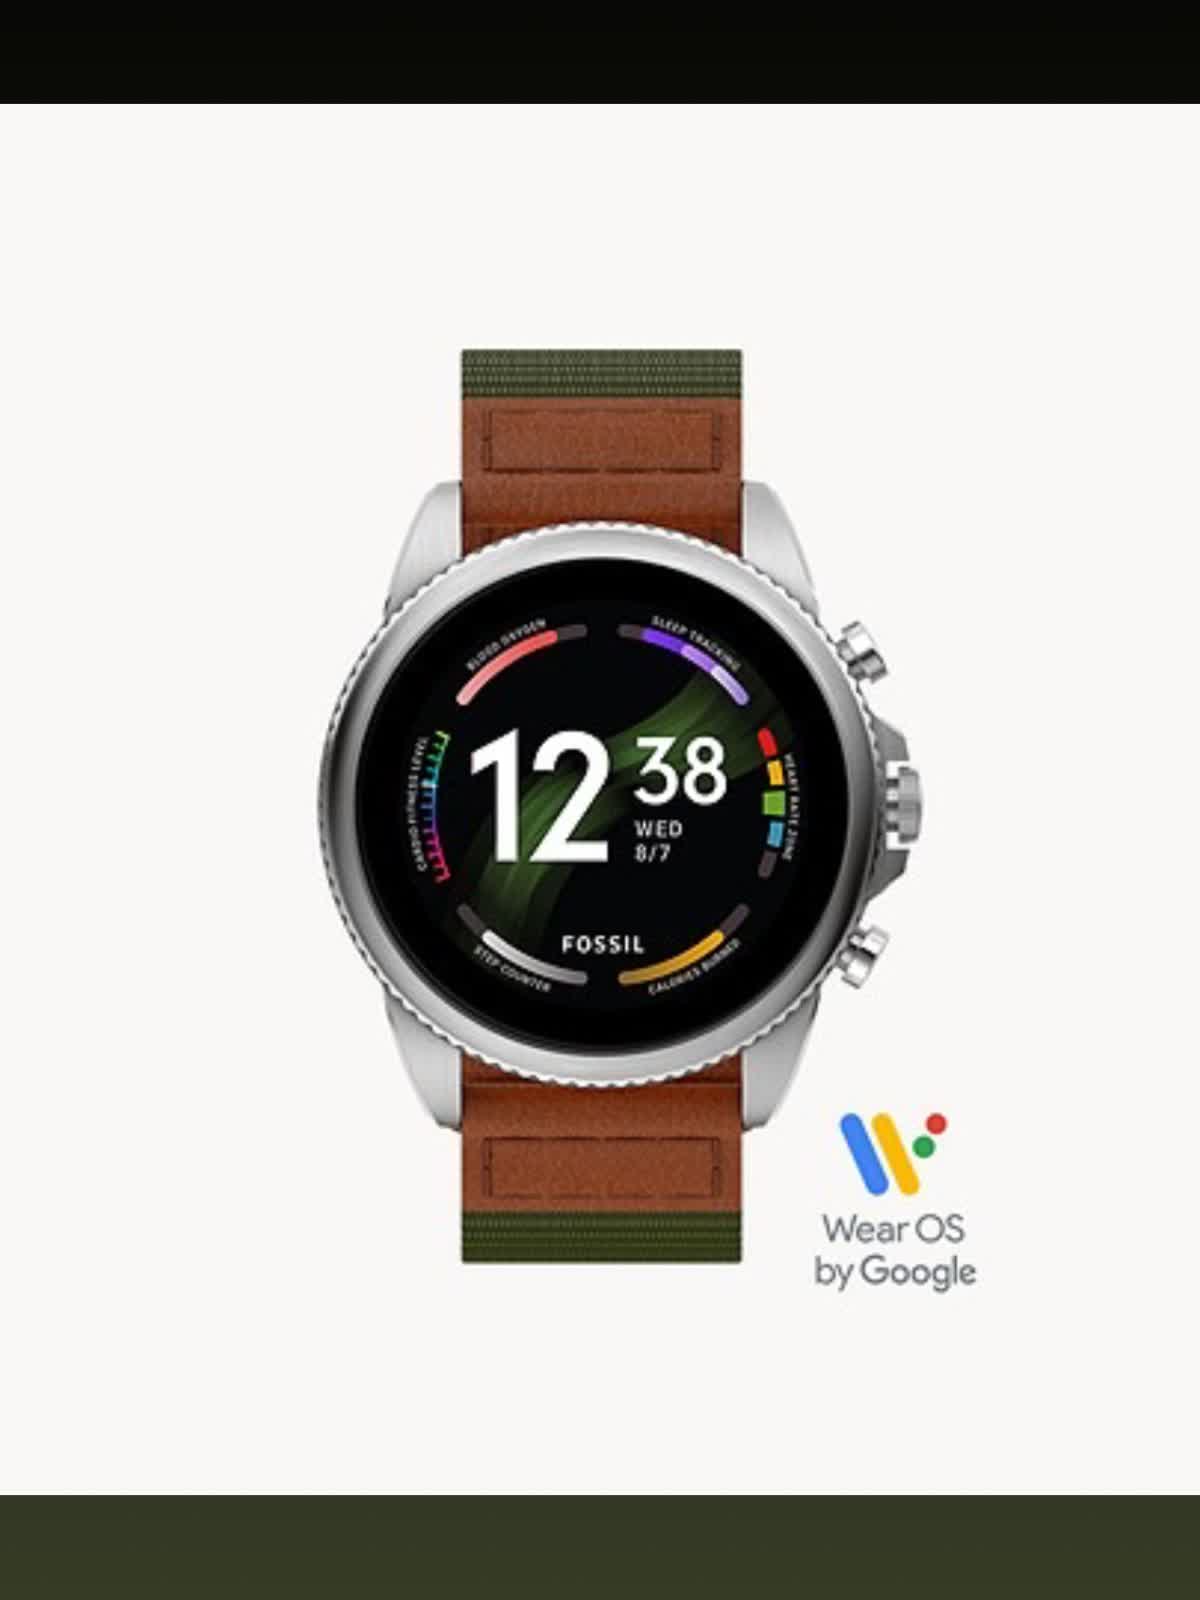 FOSSIL GEN6 スマートウォッチ Wear OS by Google - 腕時計(デジタル)